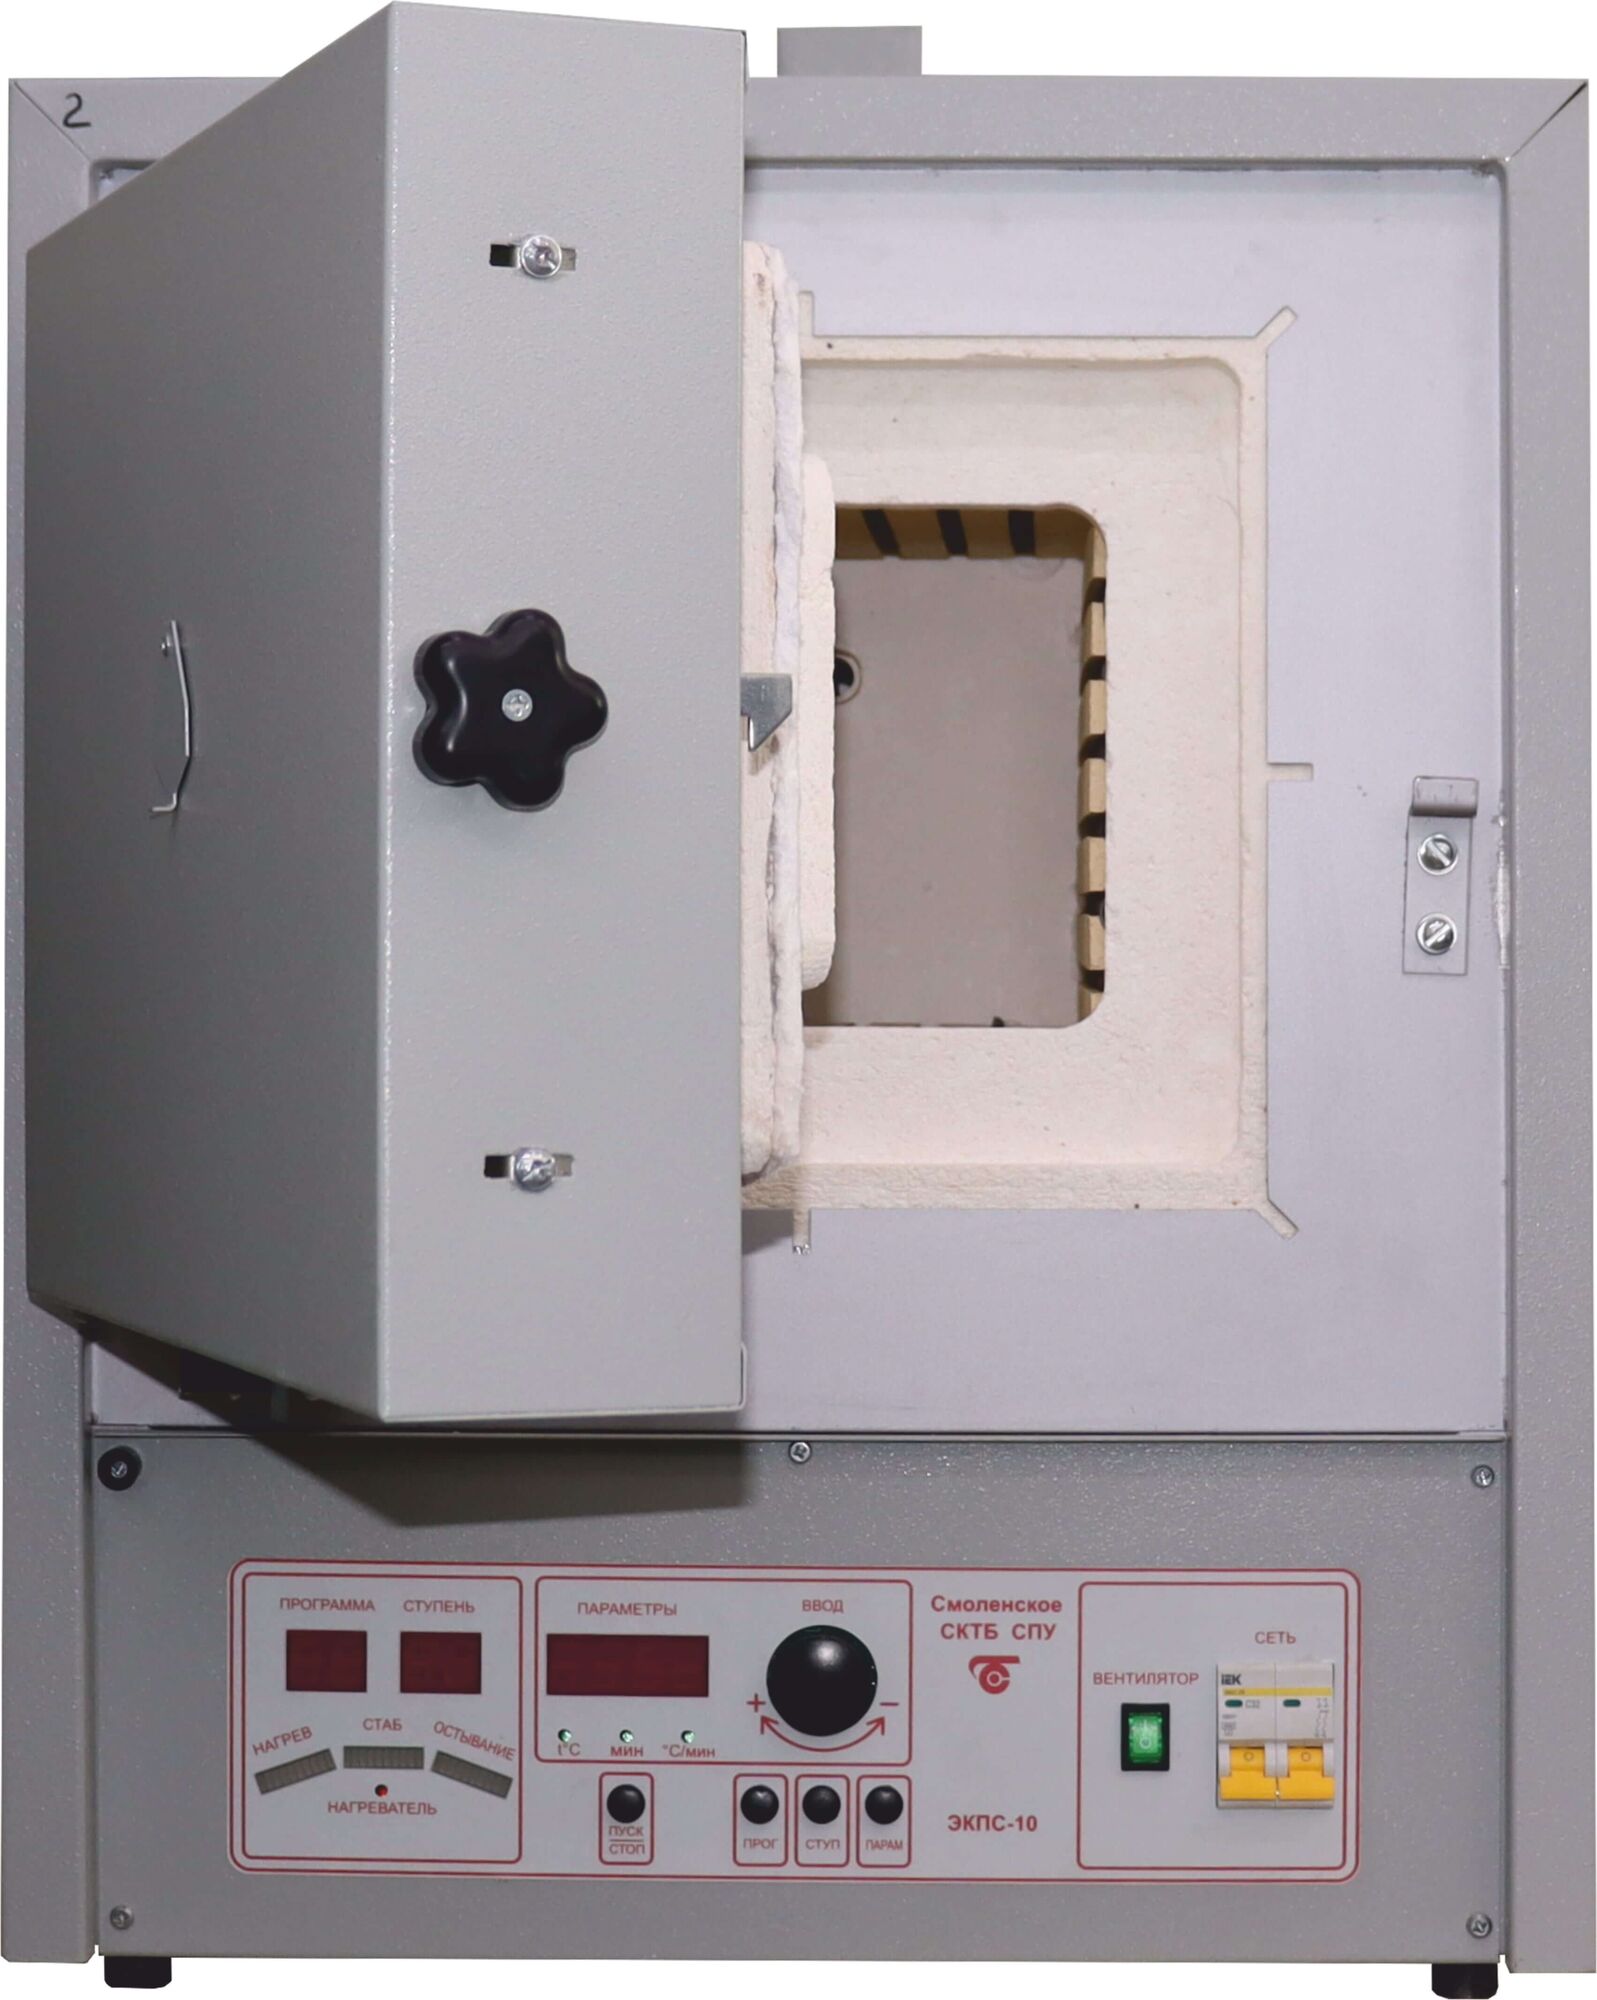 Муфельная печь ЭКПС-10 СПУ мод. 4009.1Т (50-1100 °С, керамичсекий муфель, закрытые нагреватели, многофункциональный блок